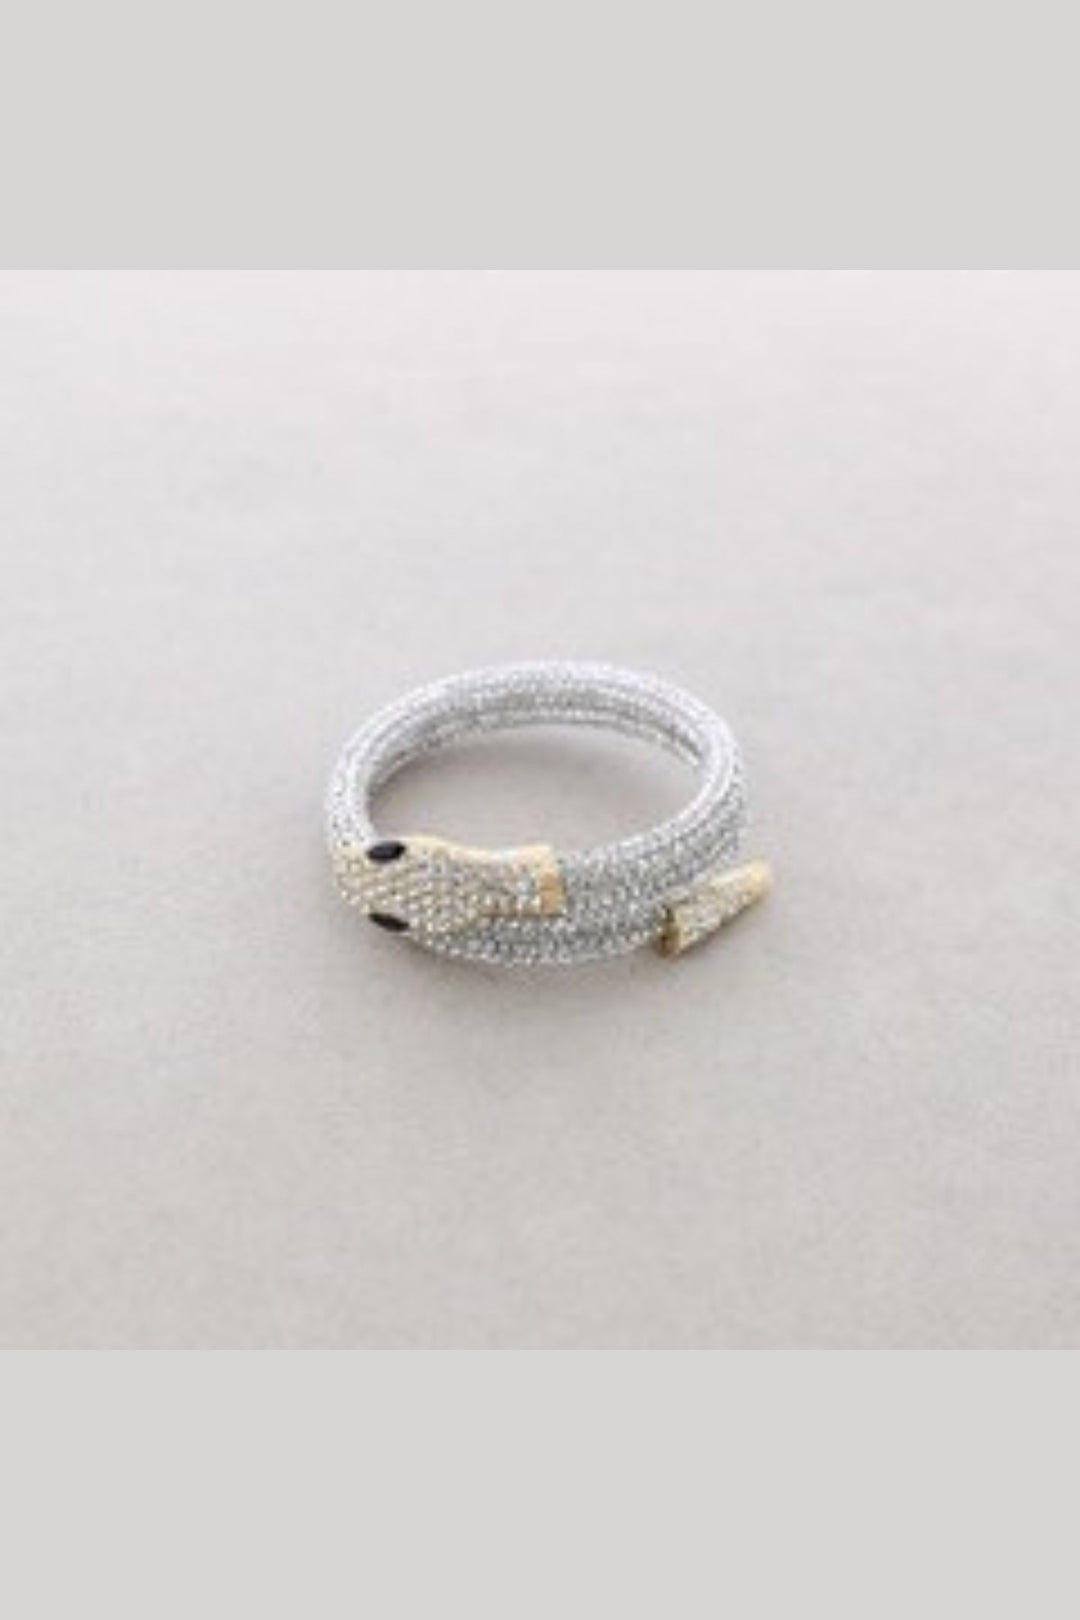 Silver Adjustable Snake Crystal Bracelet